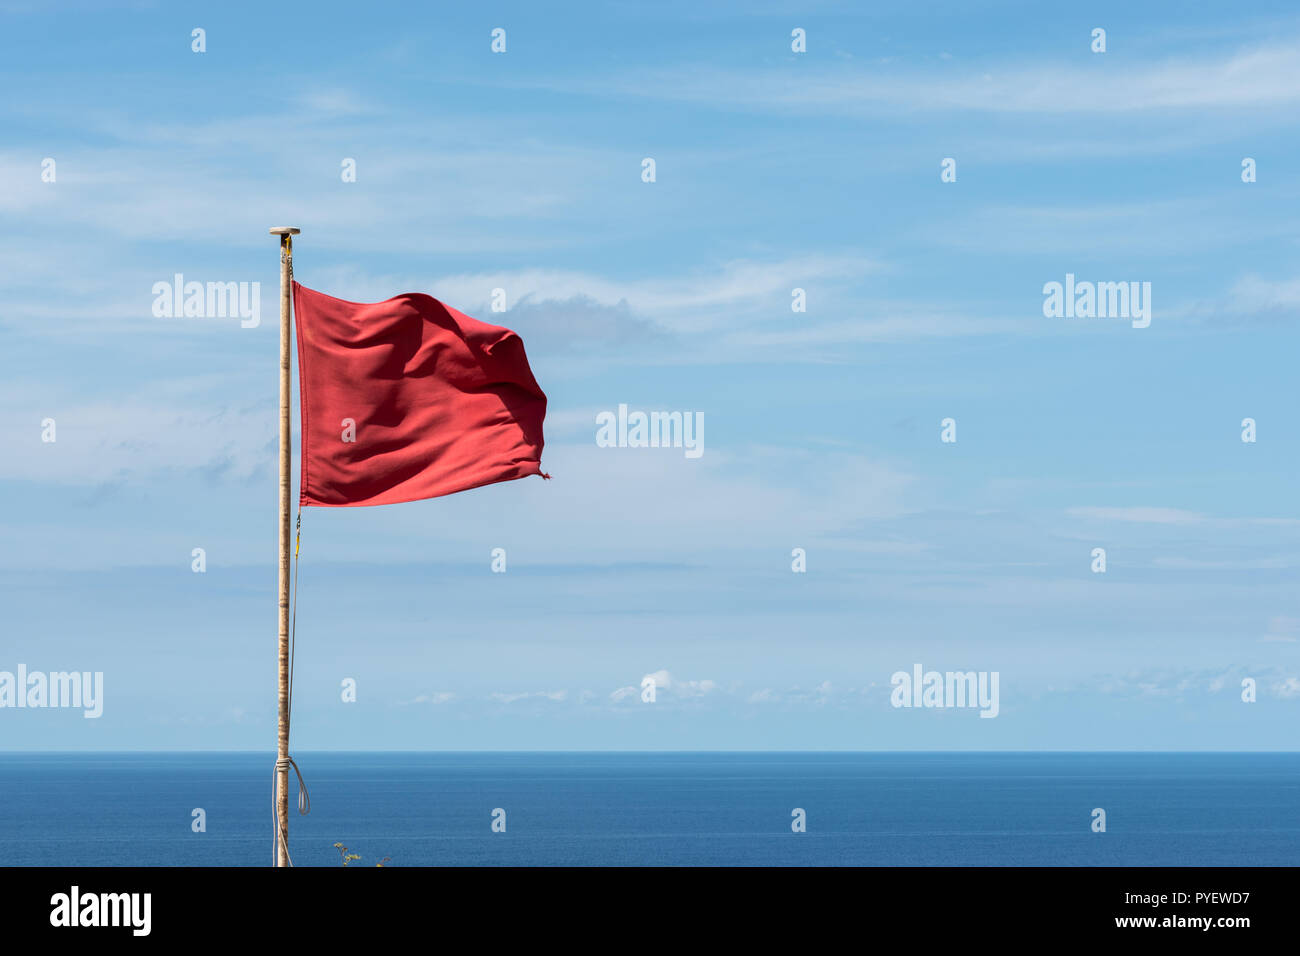 Rot Keine Warnflagge am Ende Des Schutzturms Stockfoto - Bild von feiertag,  paradies: 232265606